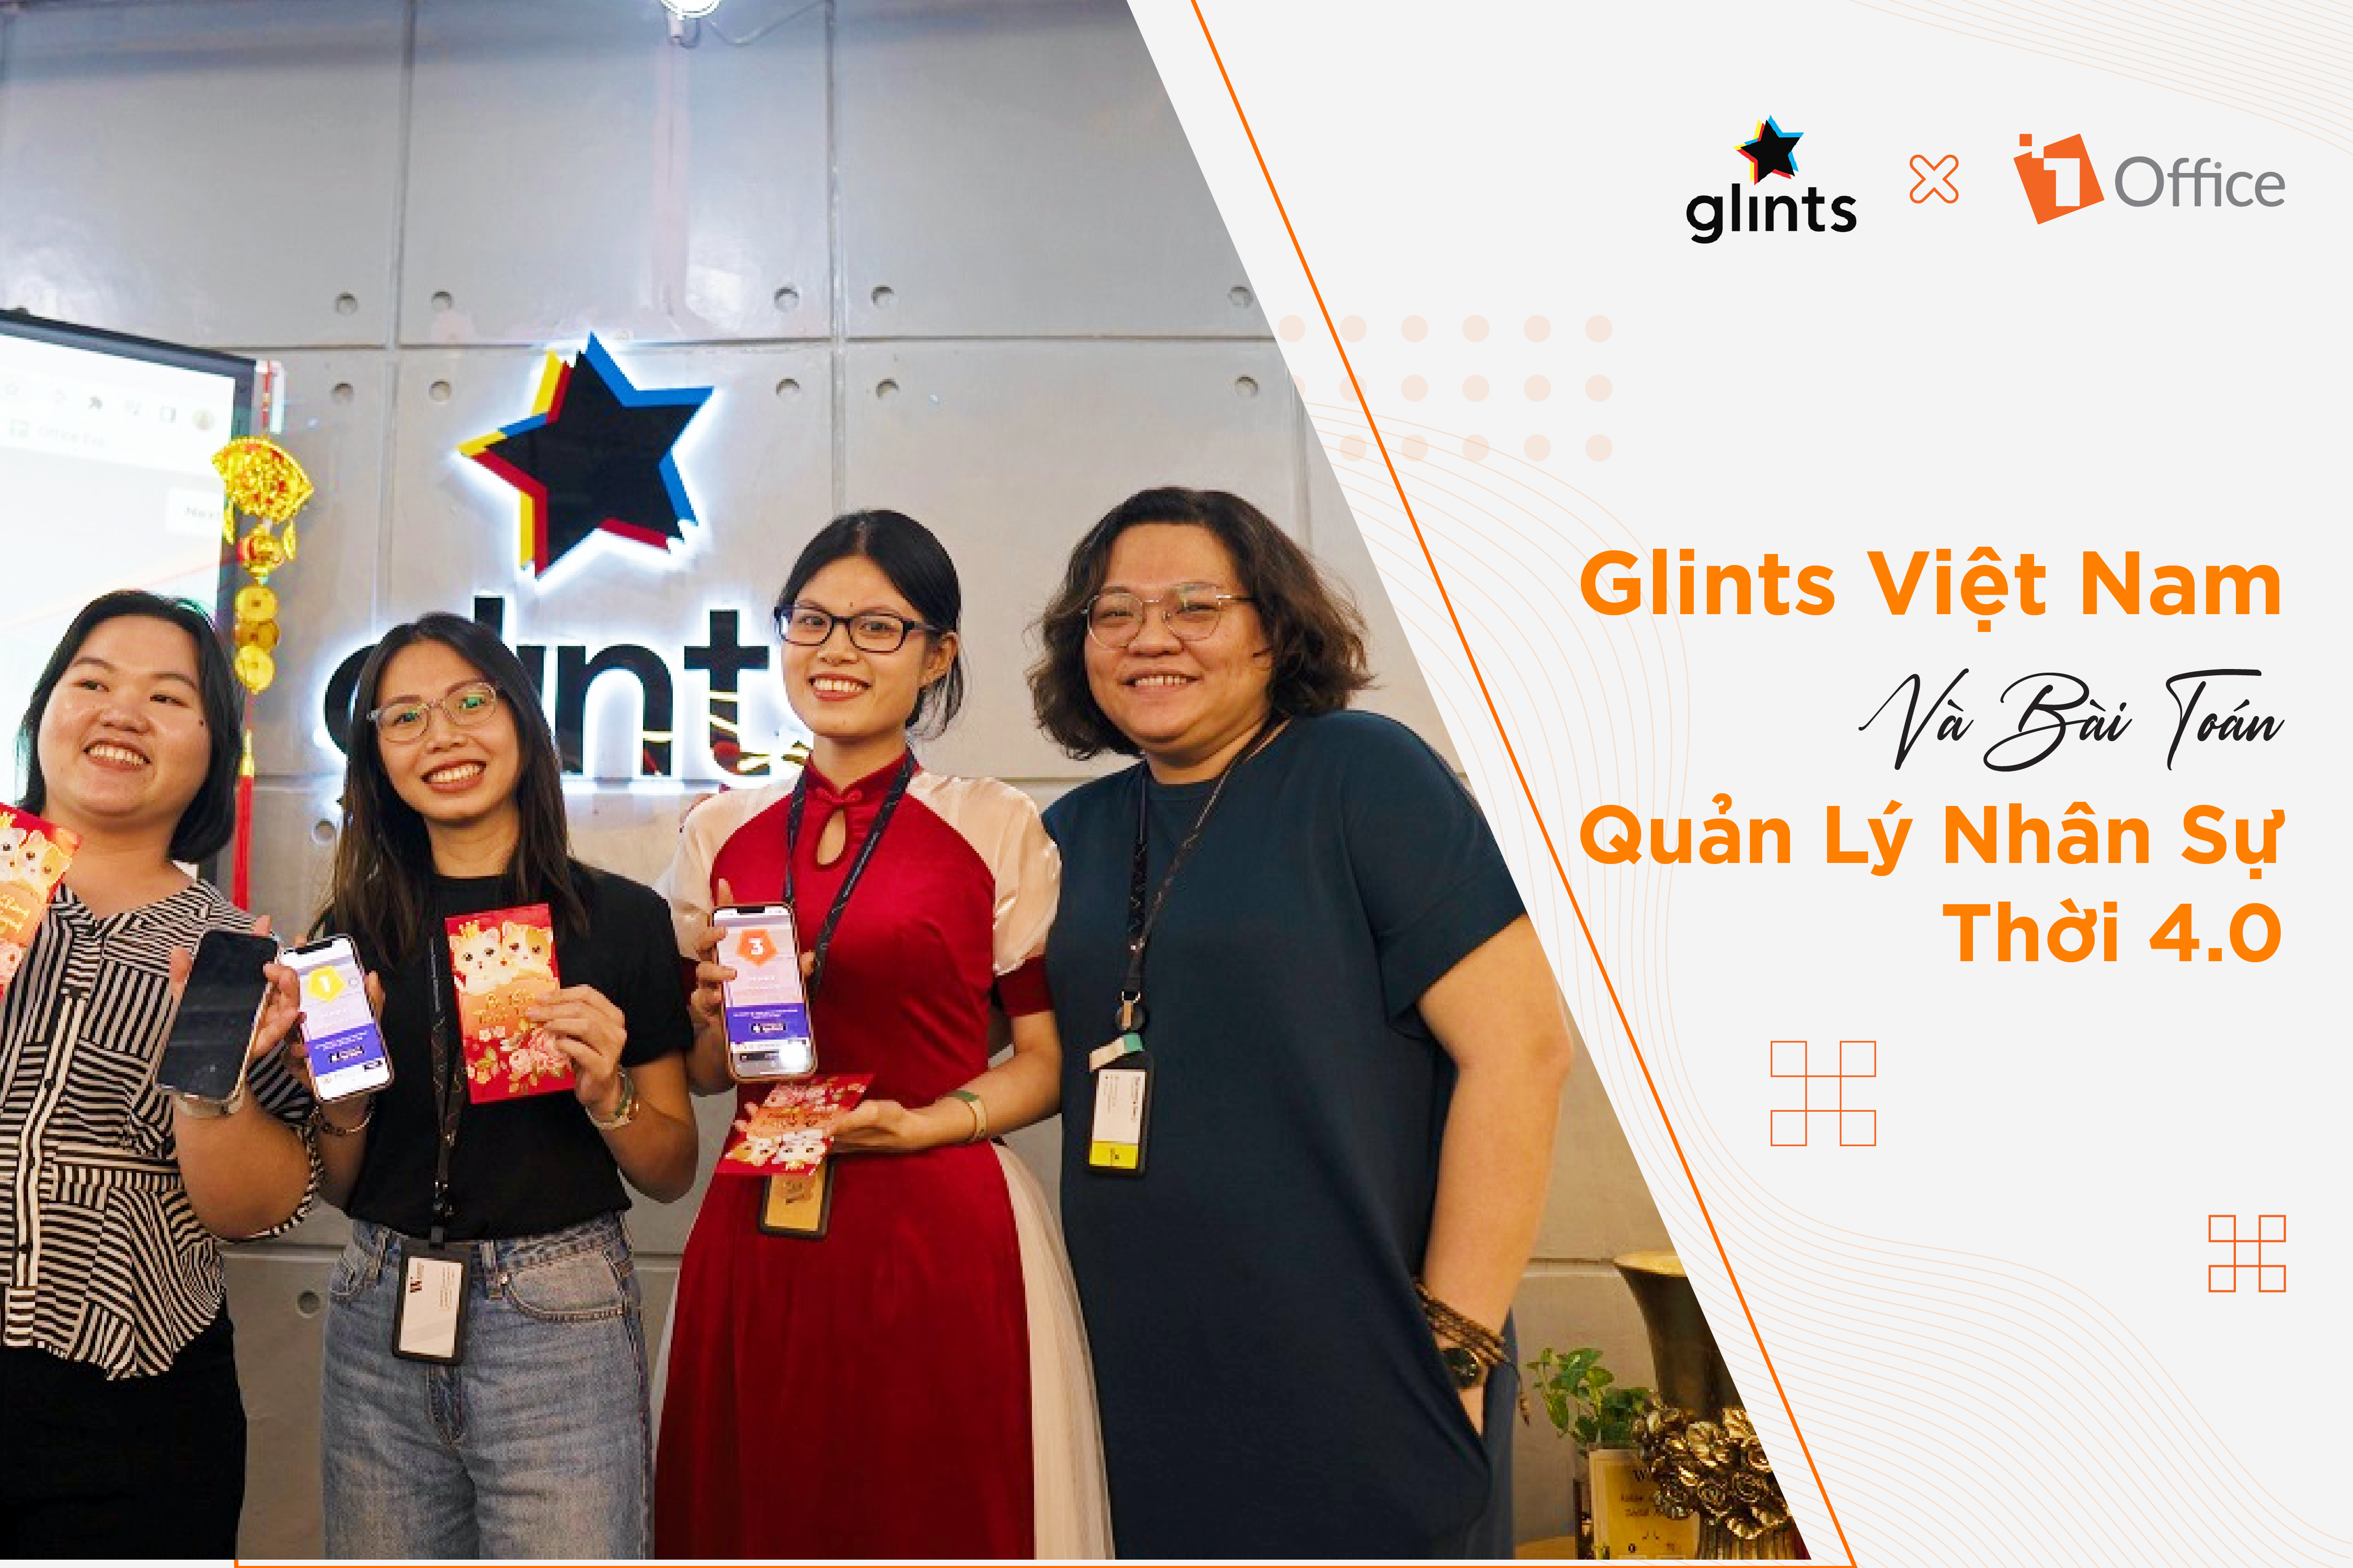 Glints Việt Nam và bài toán quản lý nhân sự thời 4.0